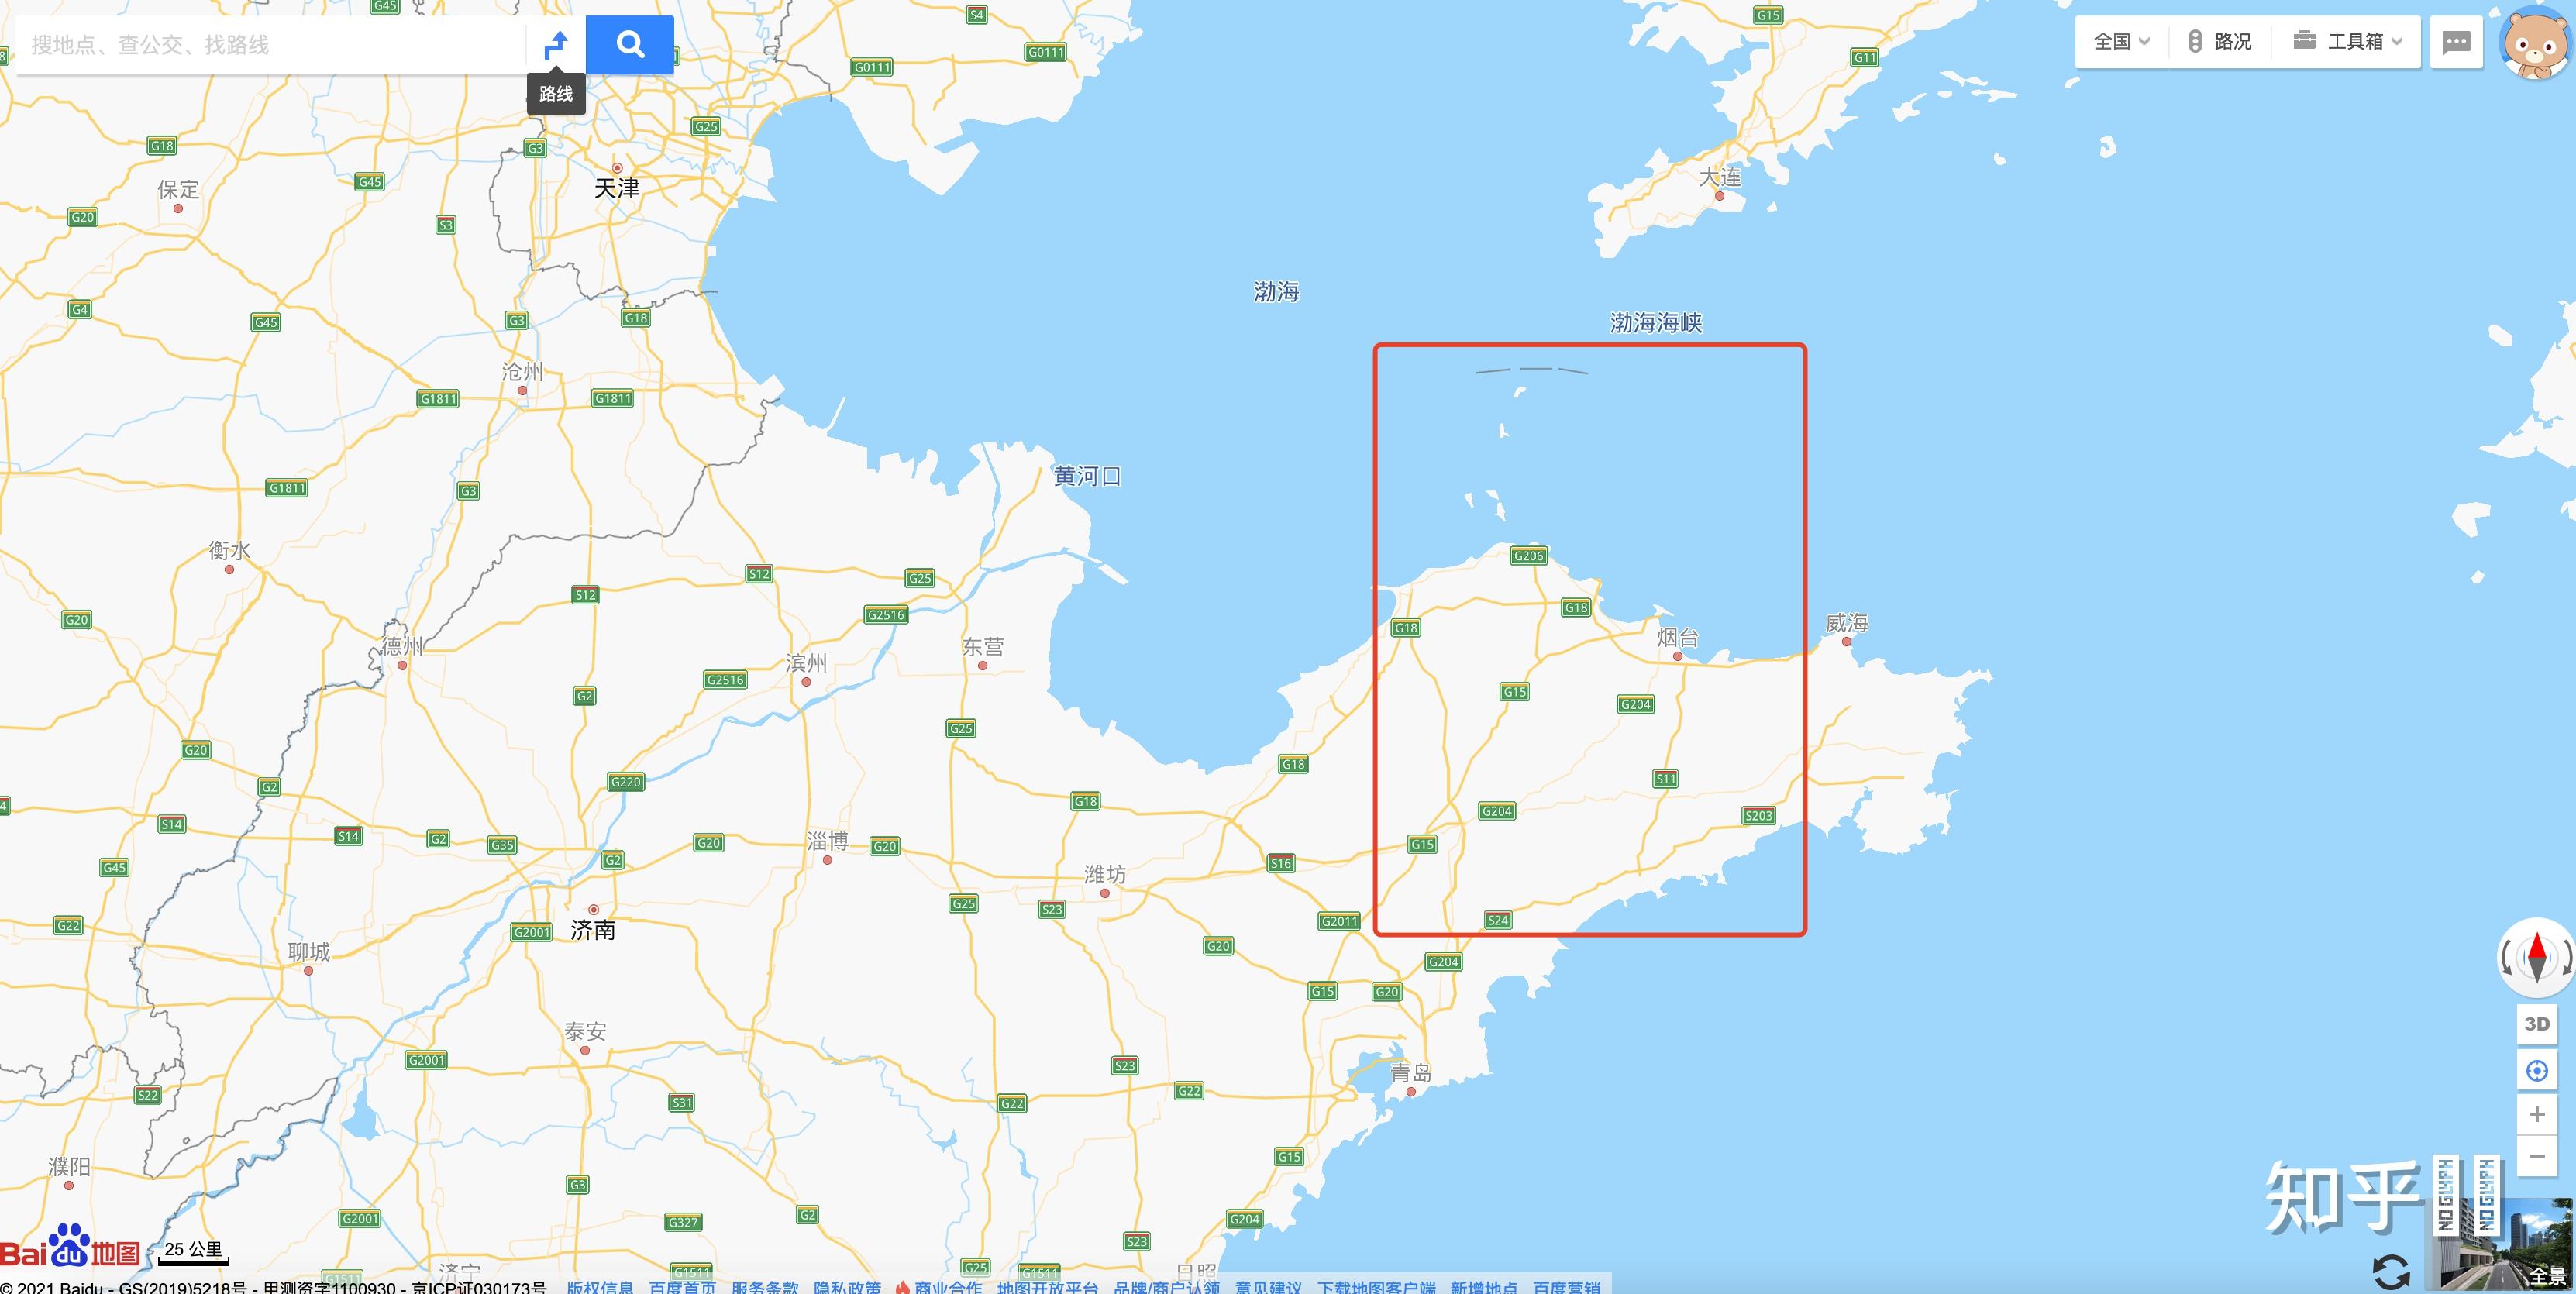 我在地图上发现渤海湾里有条线,请问是什么线?